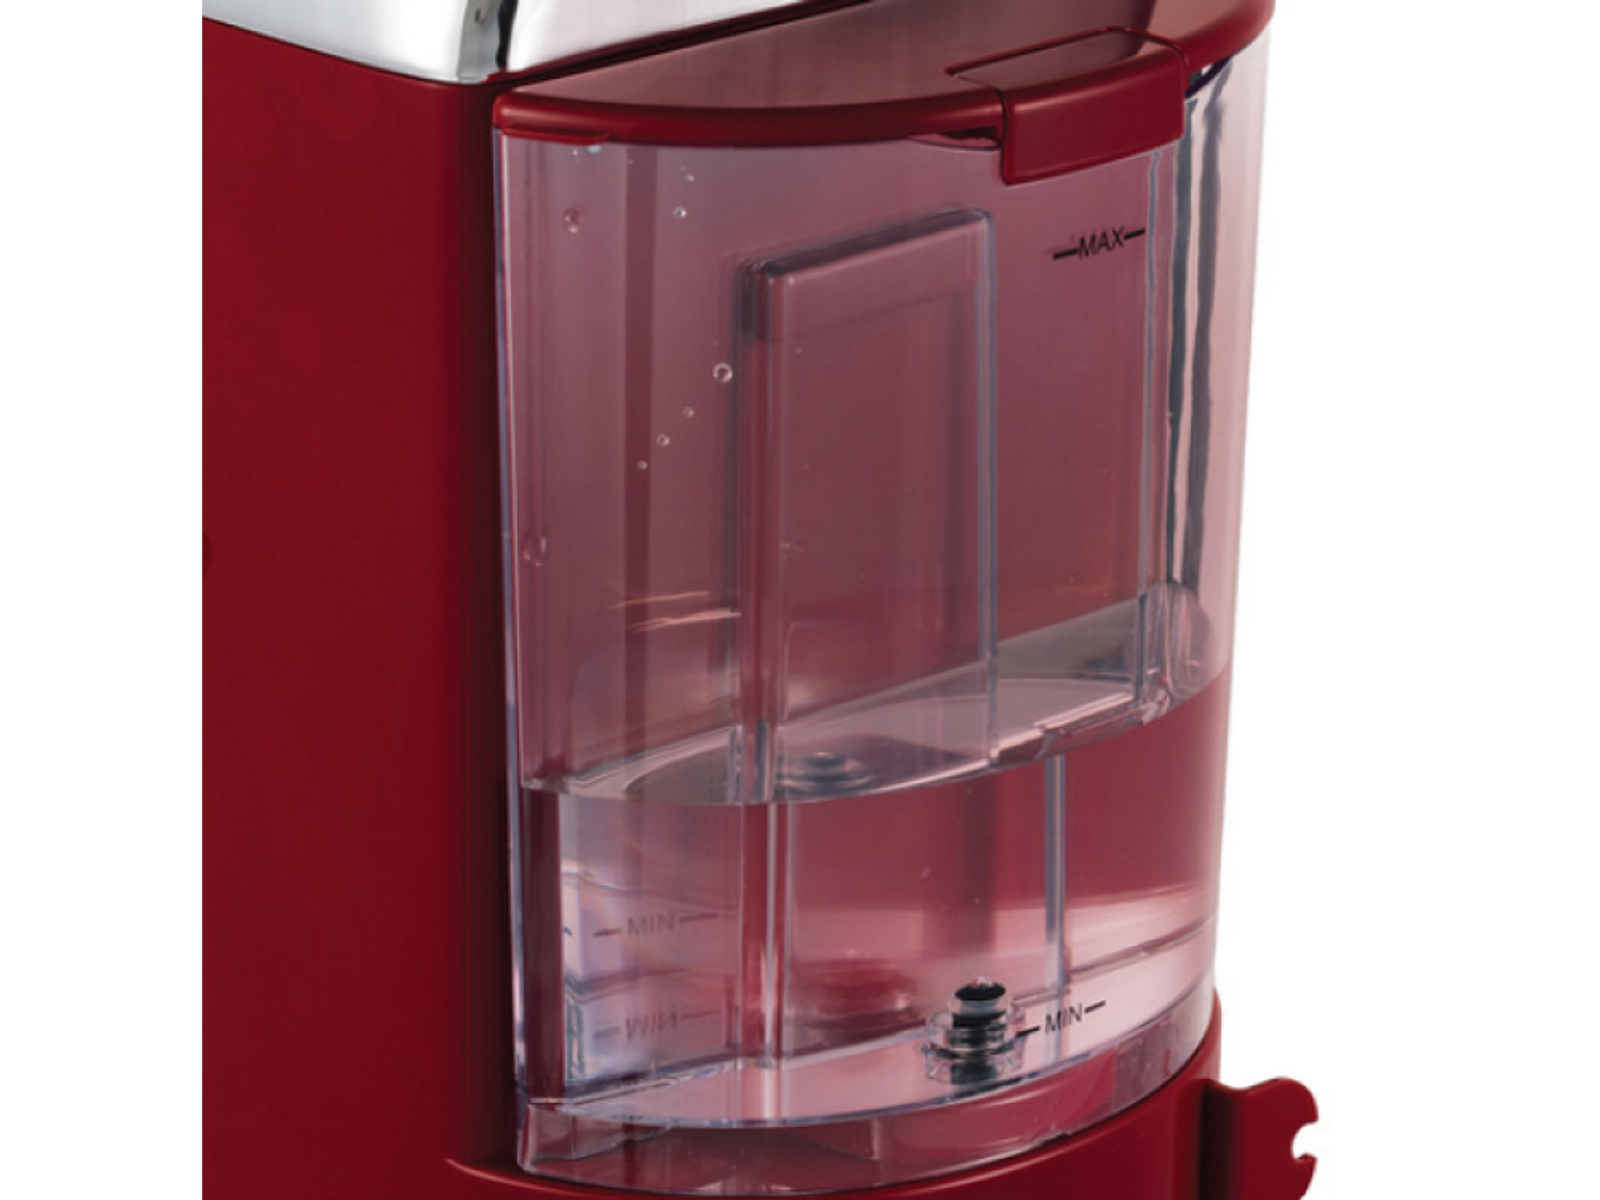 Espressomaschine rot RUSSELL Espressomaschine Retro HOBBS Siebträger